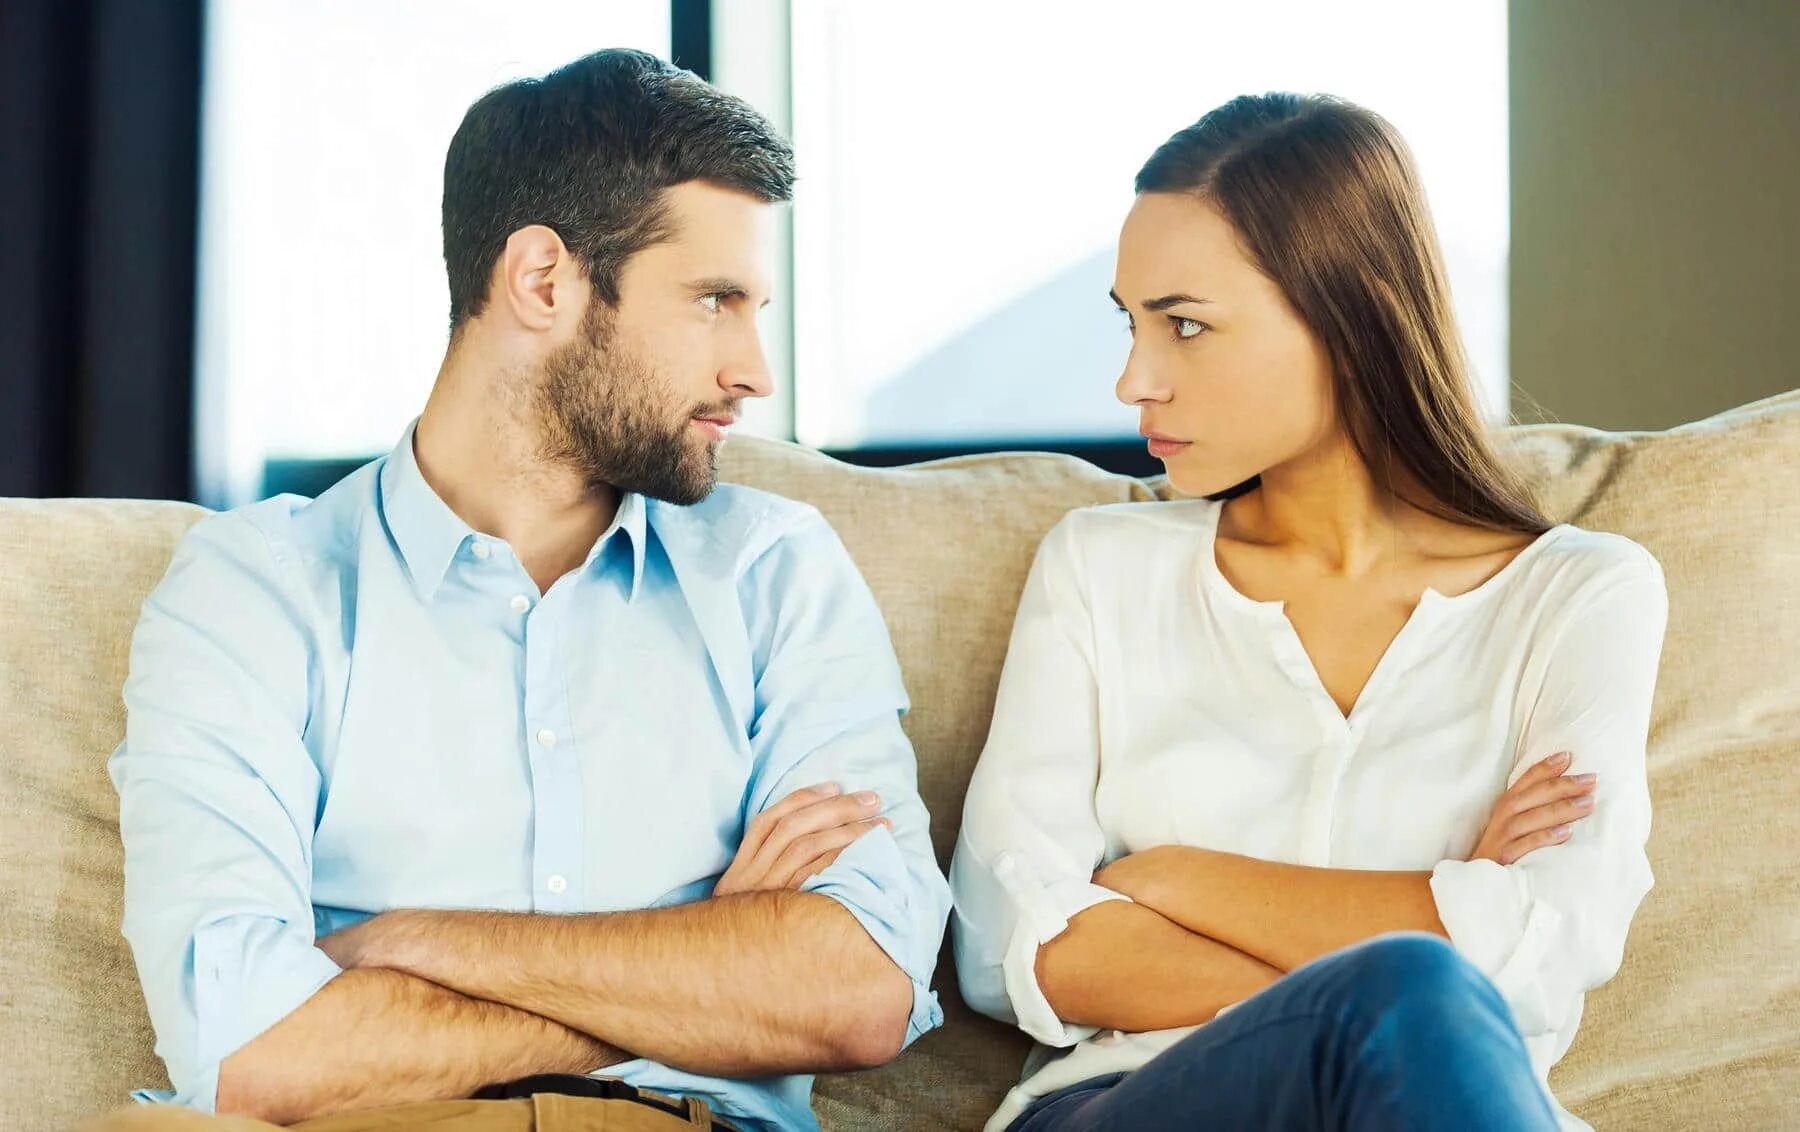 Жена ревнует что делать. Общение между мужчиной и женщиной. Разговор между мужем и женой. Компромисс в отношениях. Разговор между мужчиной и женщиной.